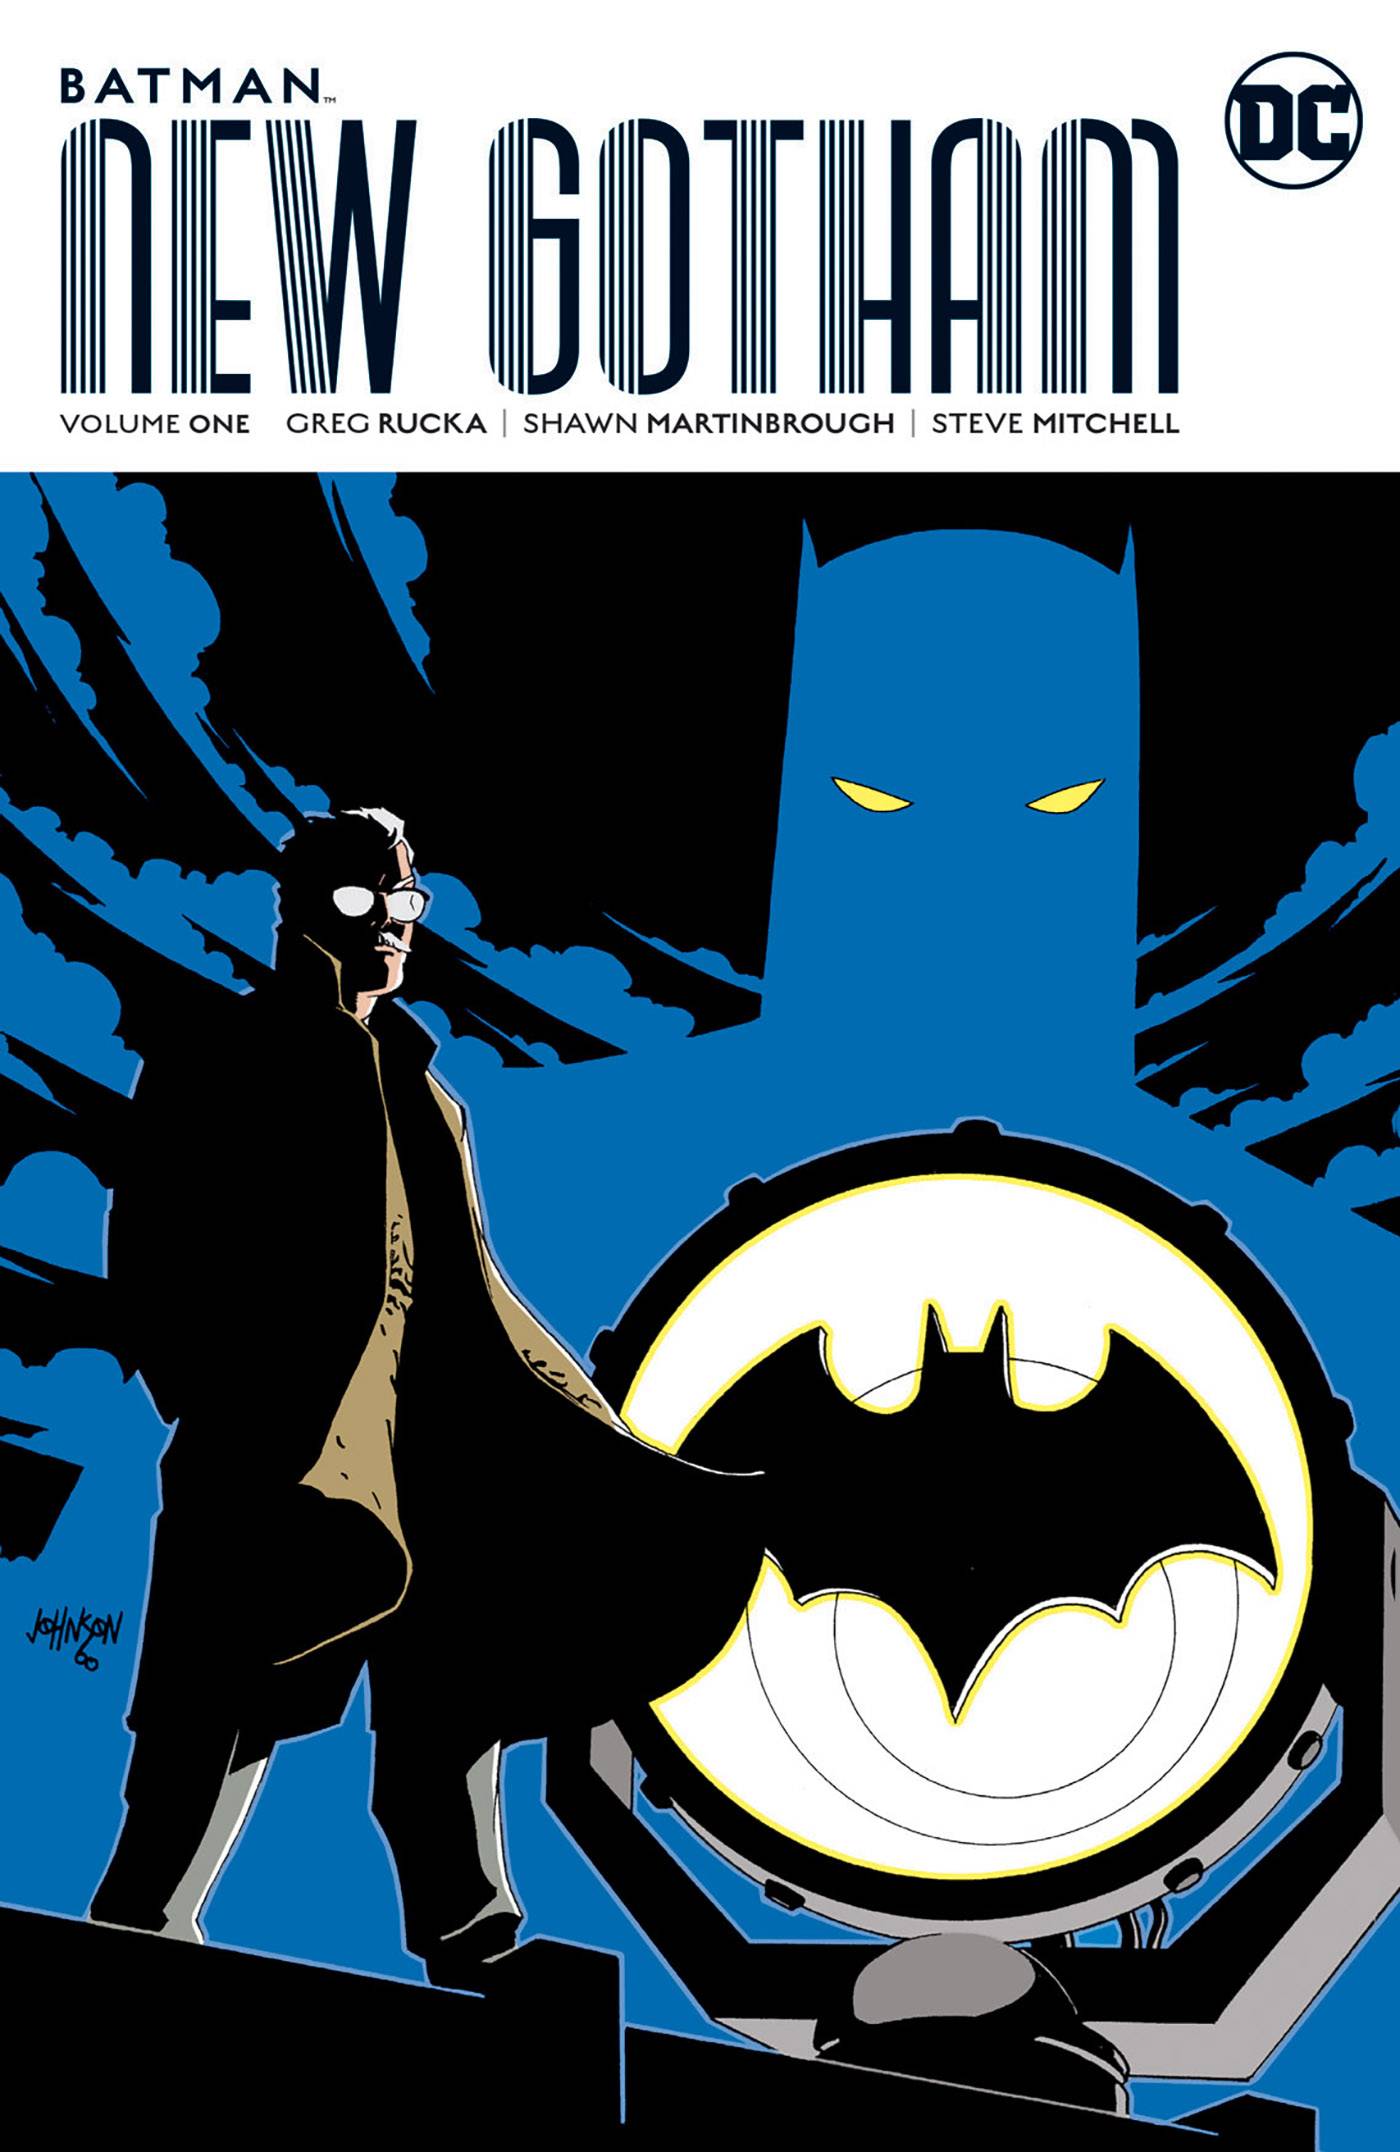 Batman New Gotham Graphic Novel Volume 1